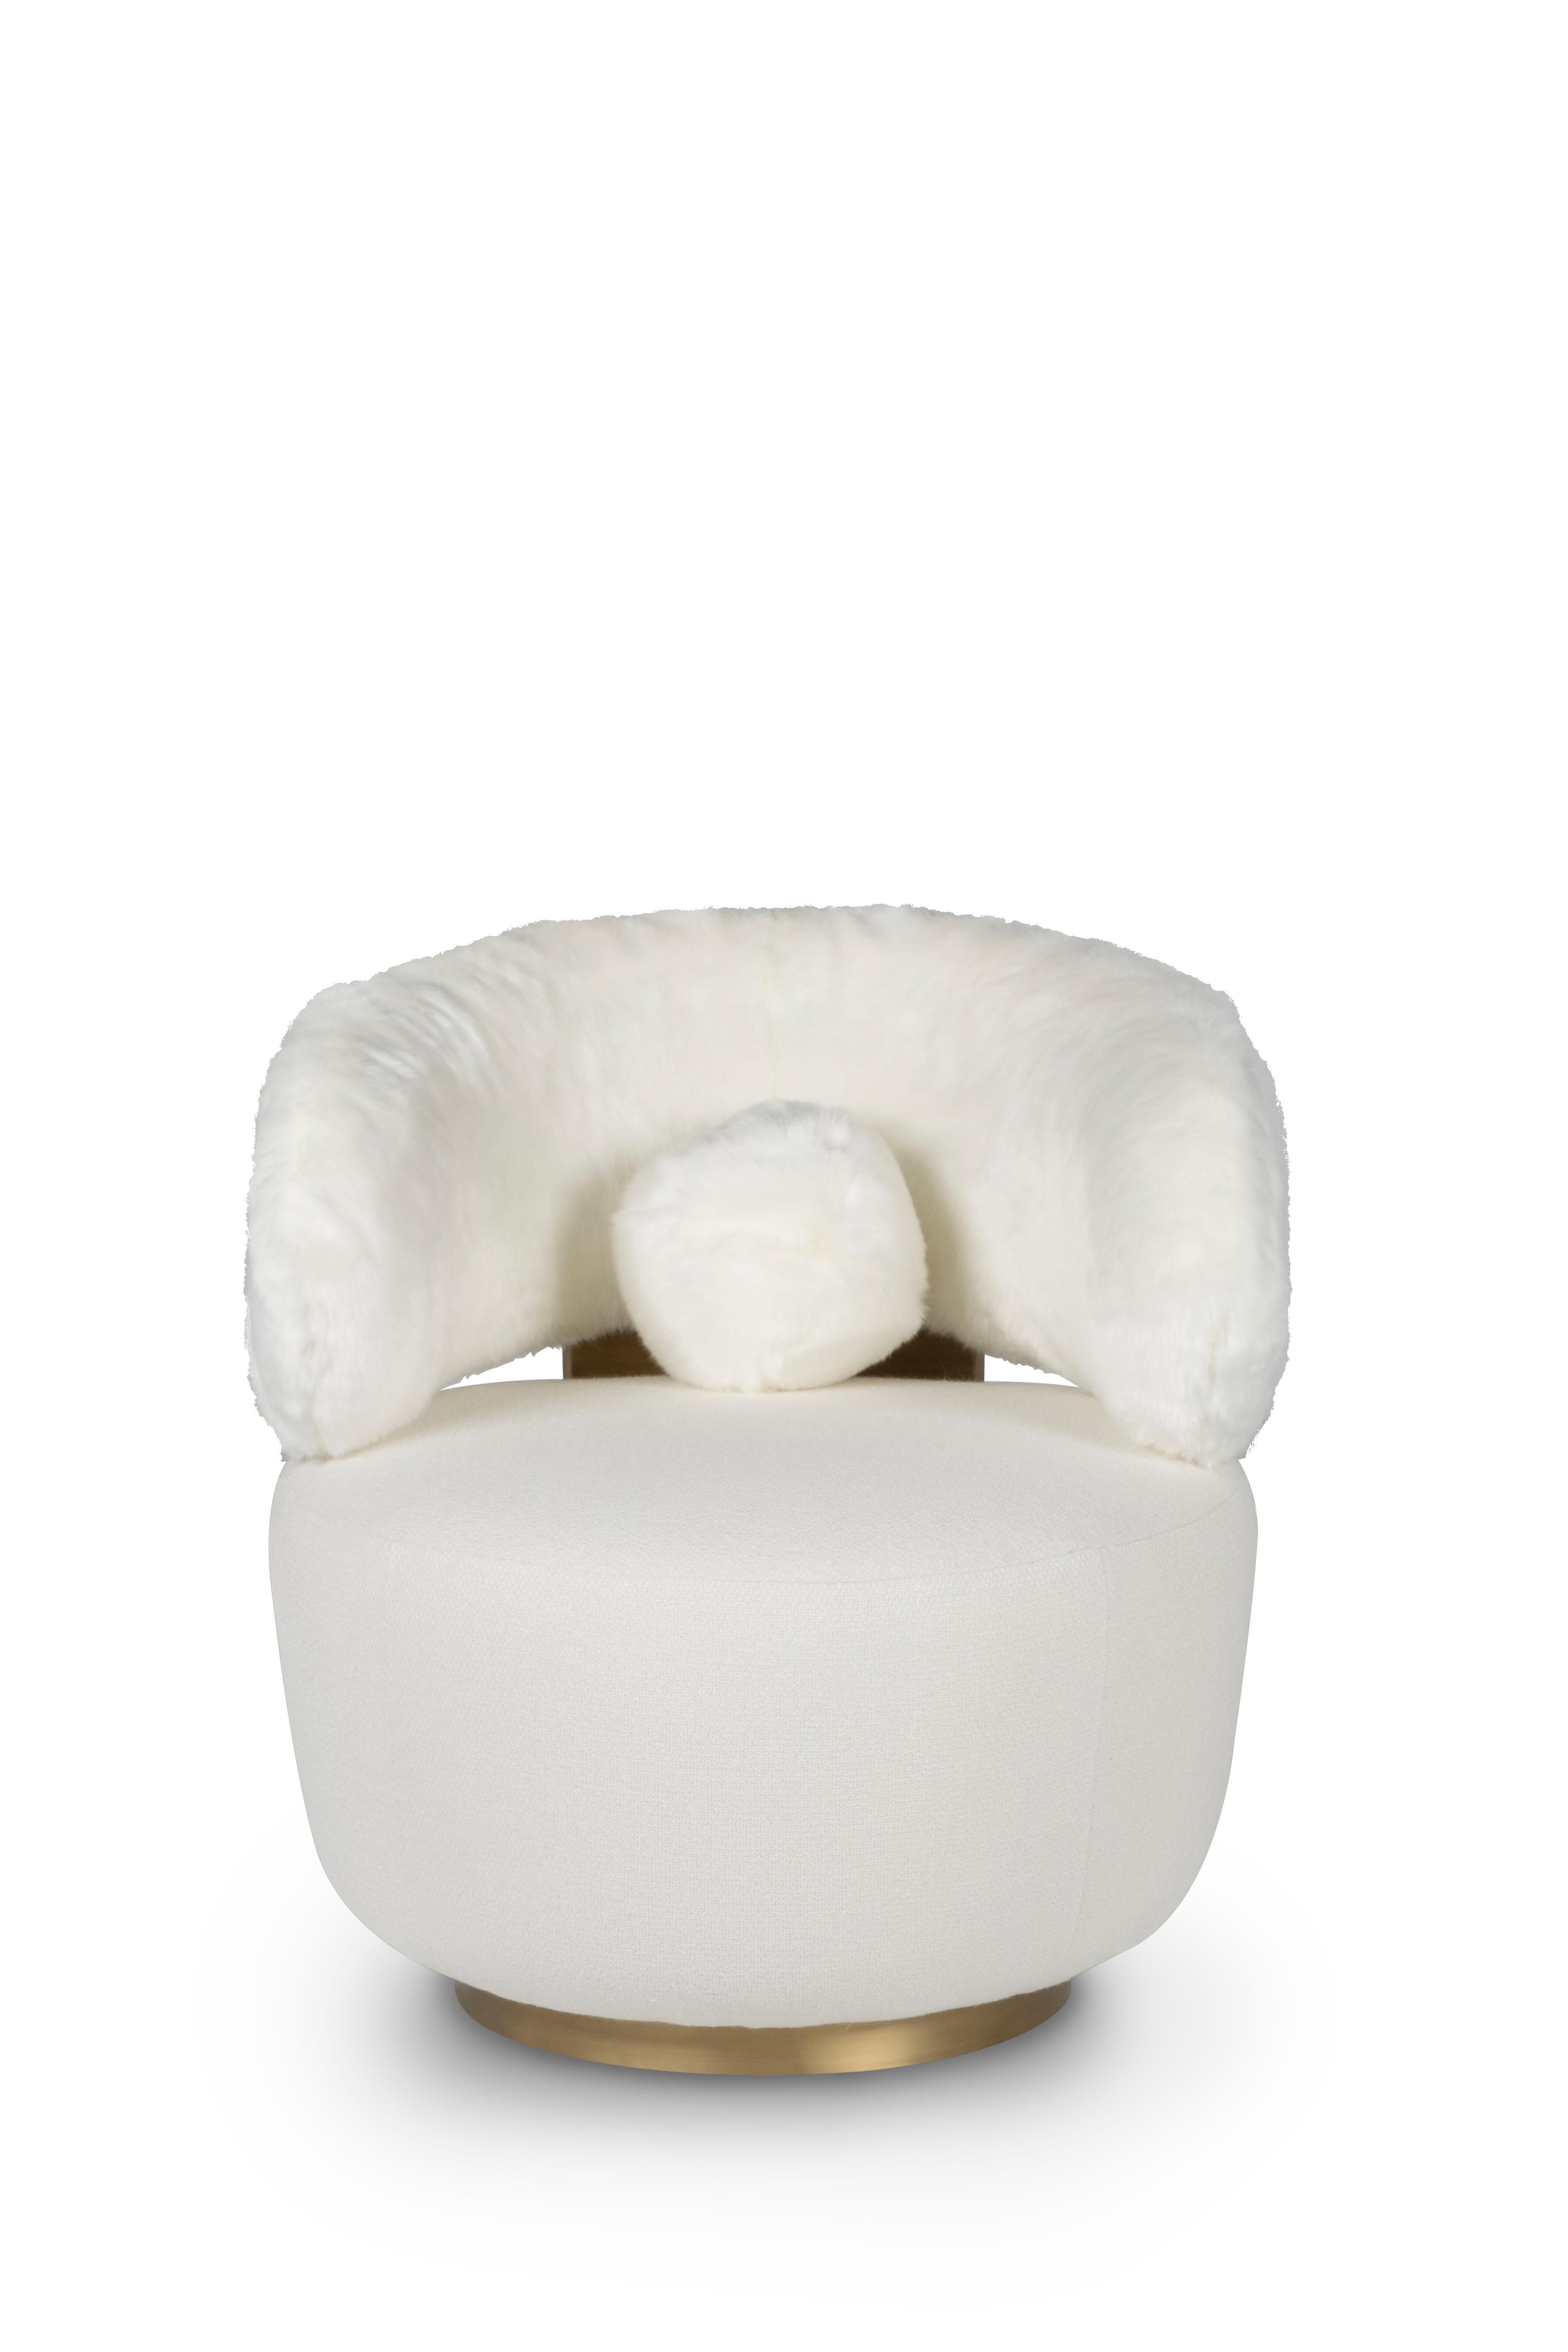 Caju Swivel Lounge Chair, Contemporary Collection, Handcrafted in Portugal - Europe by Greenapple.

La chaise longue Caju est un meuble tendance qui personnifie la forme organique d'un cajou. Tapissé de fausse fourrure et de tissu mélangé au lin